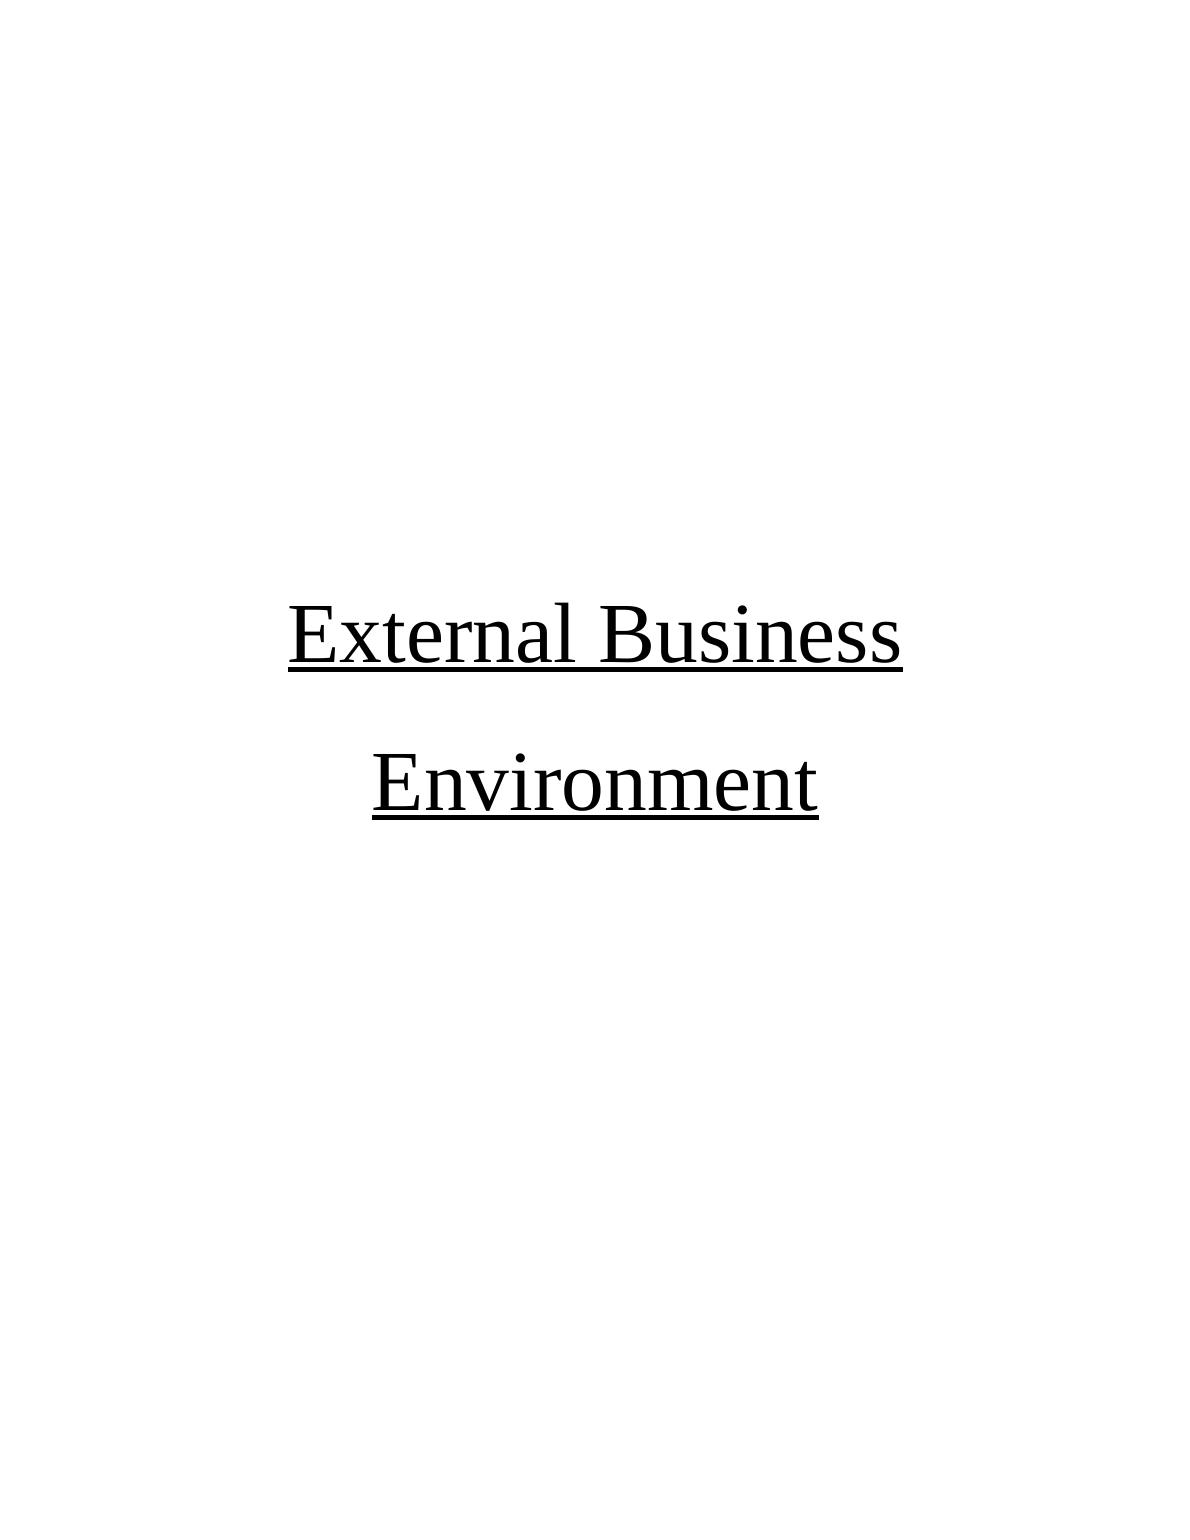 External Business Environment | Study_1